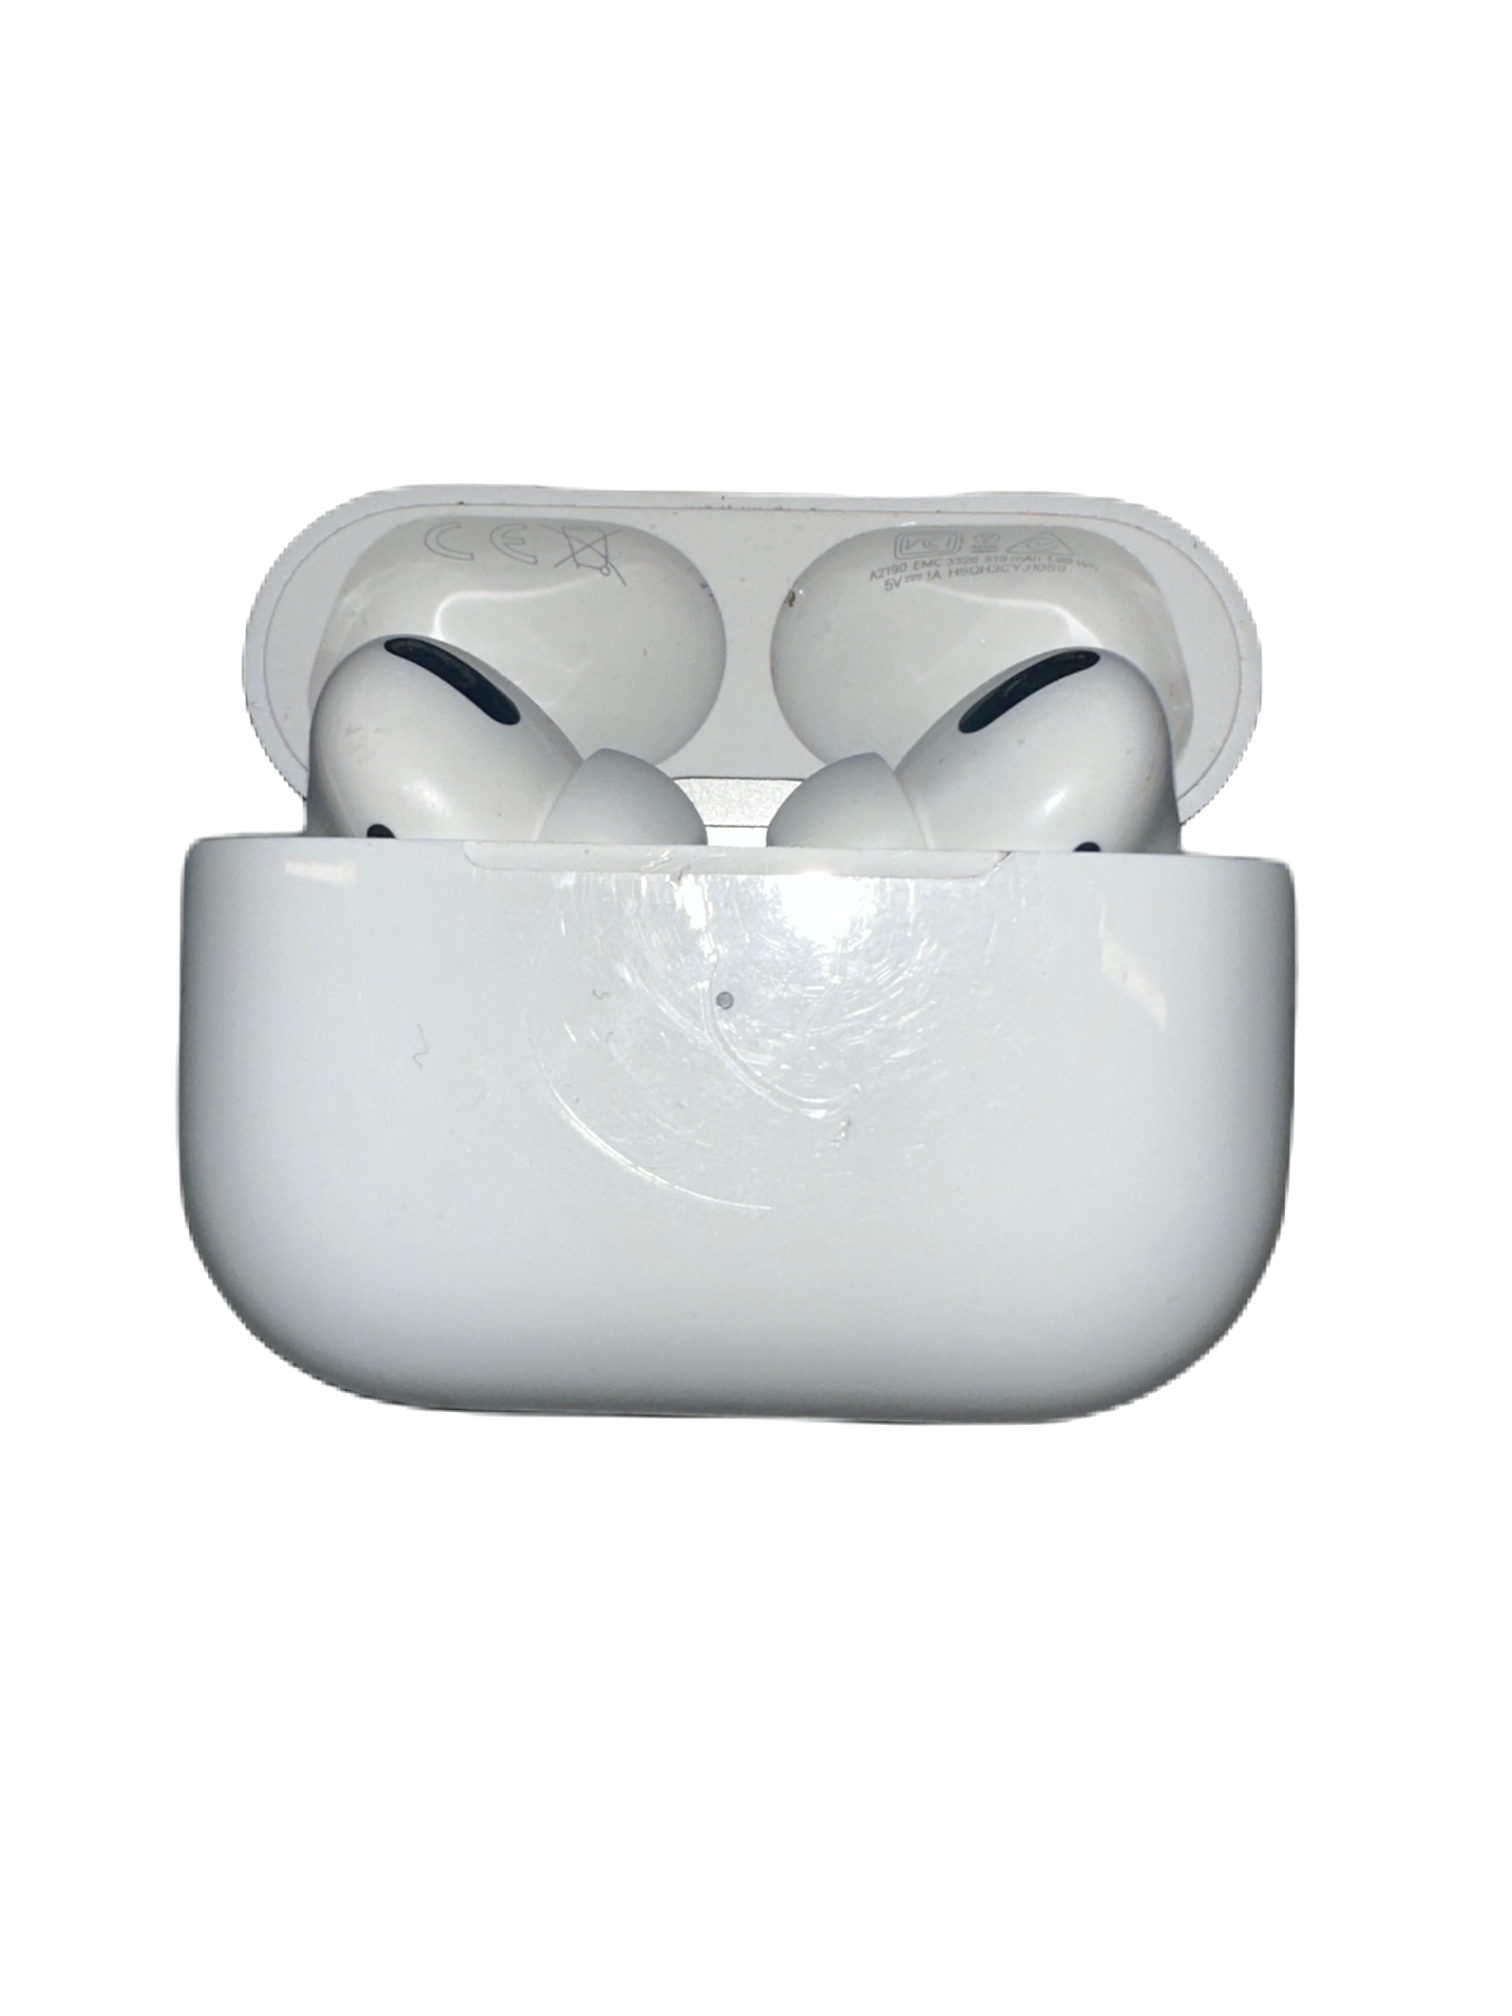 Apple Airpod Pro Gen 1 - Unboxed B Grade - Wireless